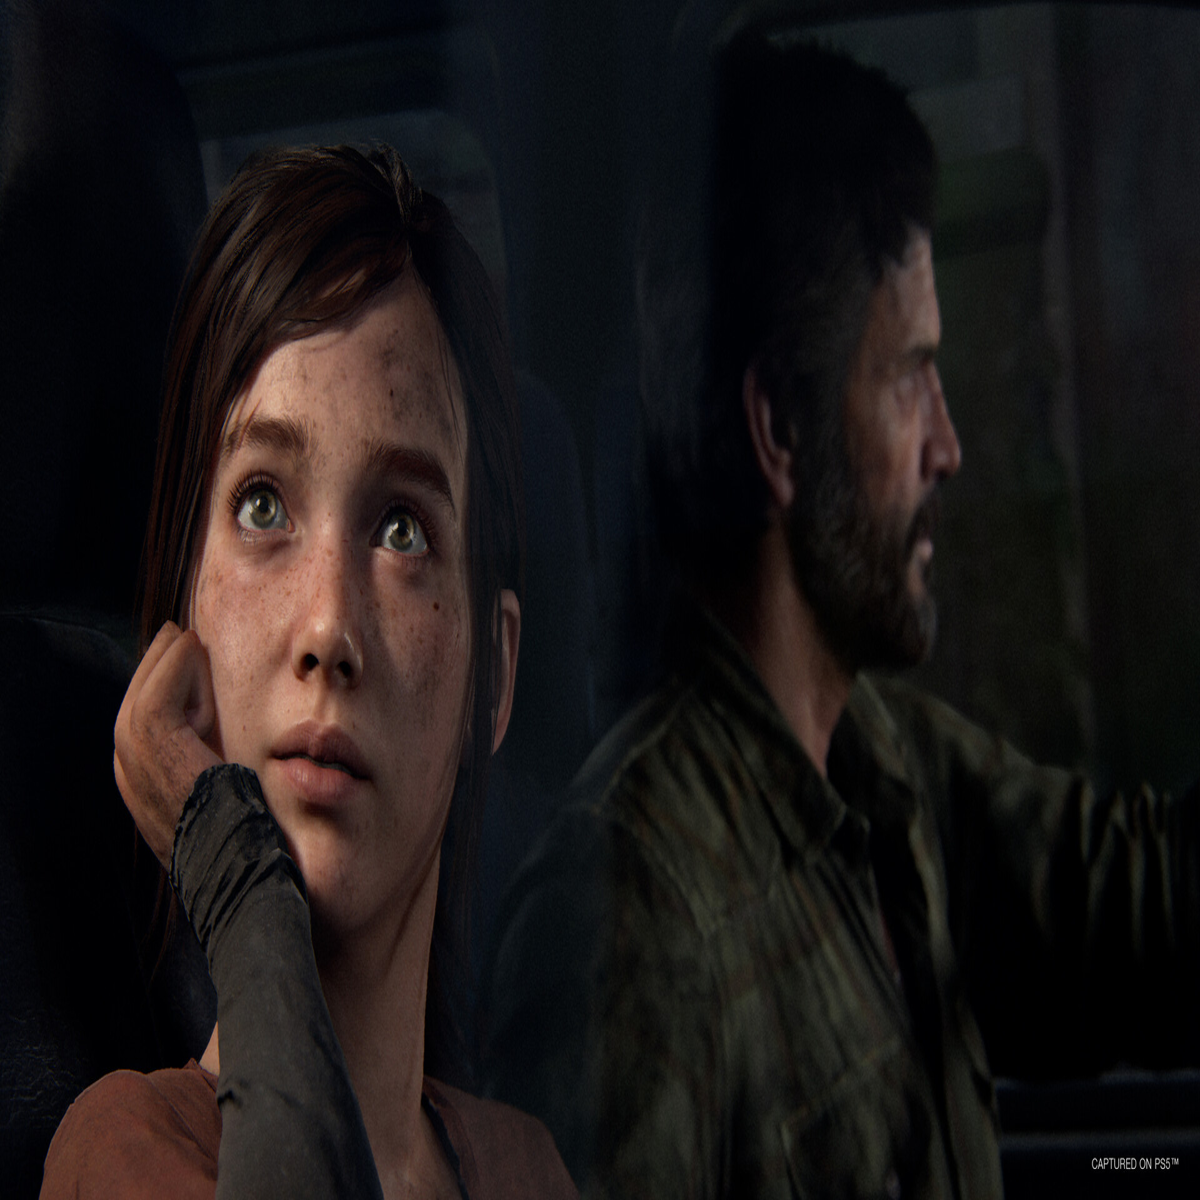 Já são conhecidos os requisitos mínimos para a versão PC de The Last of Us  Part 1